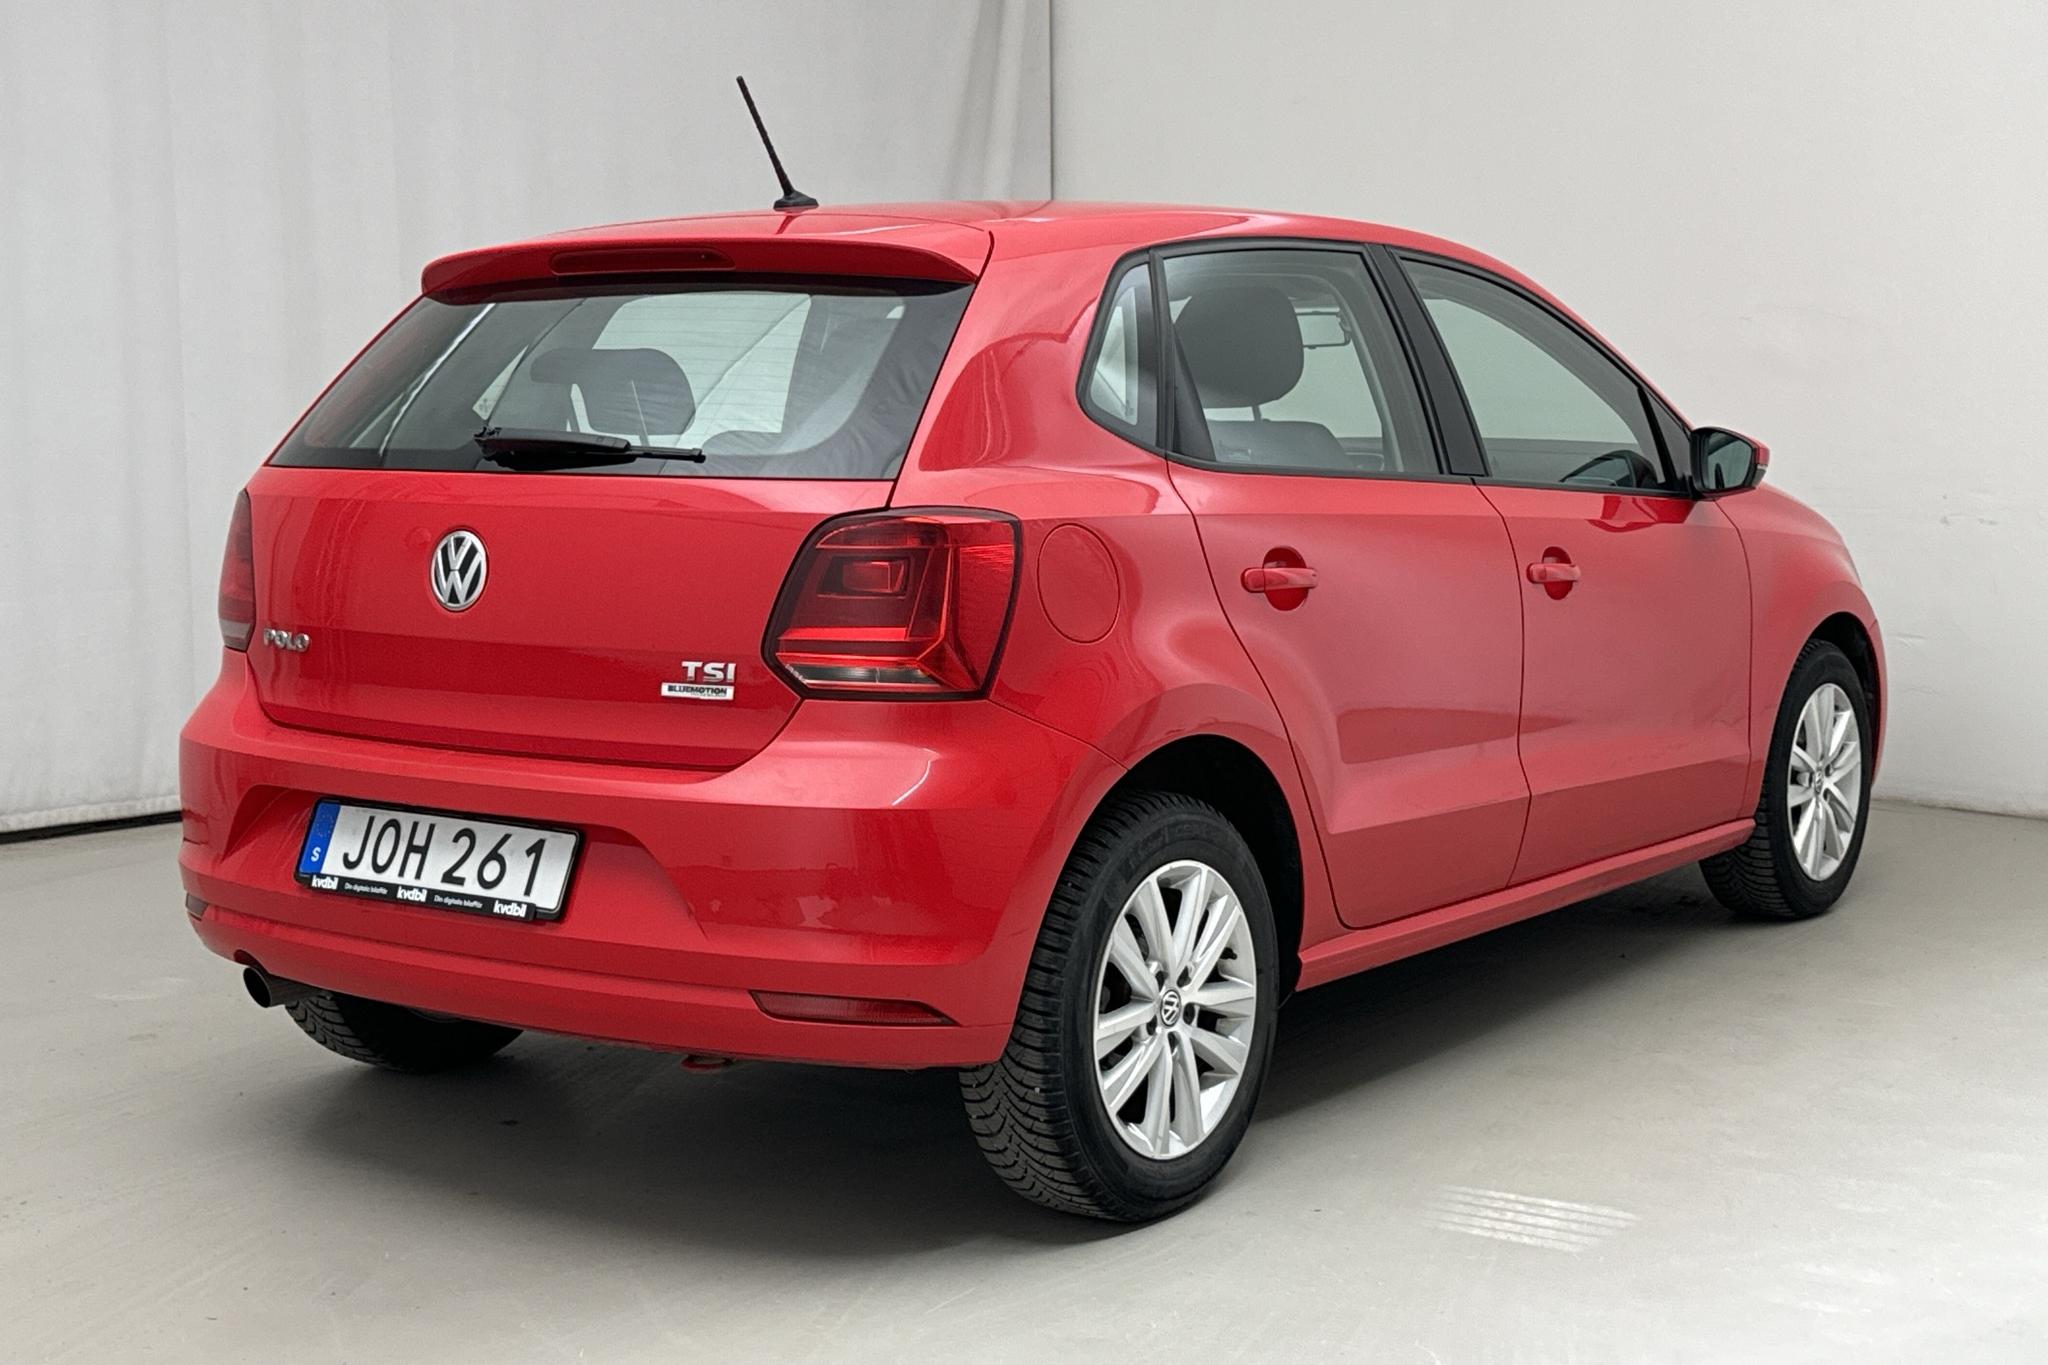 VW Polo 1.2 TSI 5dr (90hk) - 16 300 km - Manuaalinen - punainen - 2016